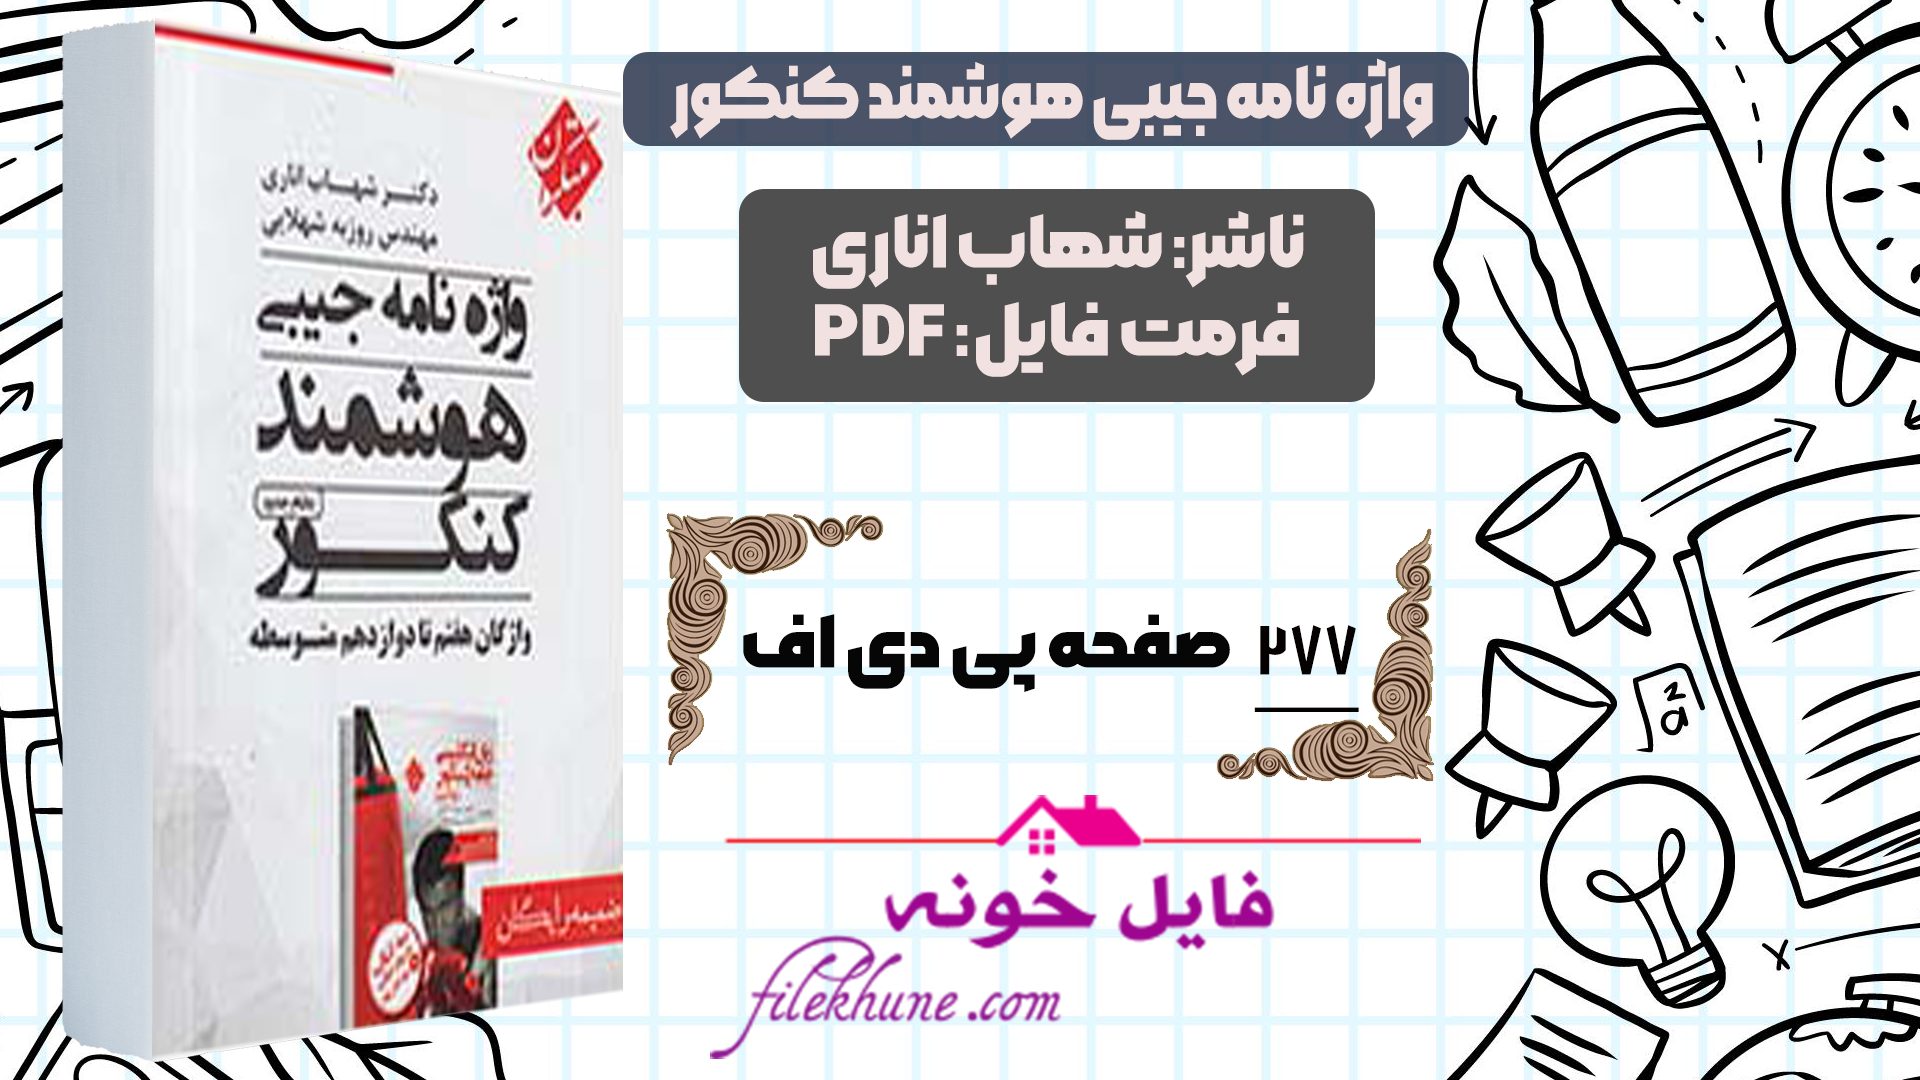 دانلود واژه نامه جیبی هوشمند زبان جامع مبتکران شهاب اناری PDF